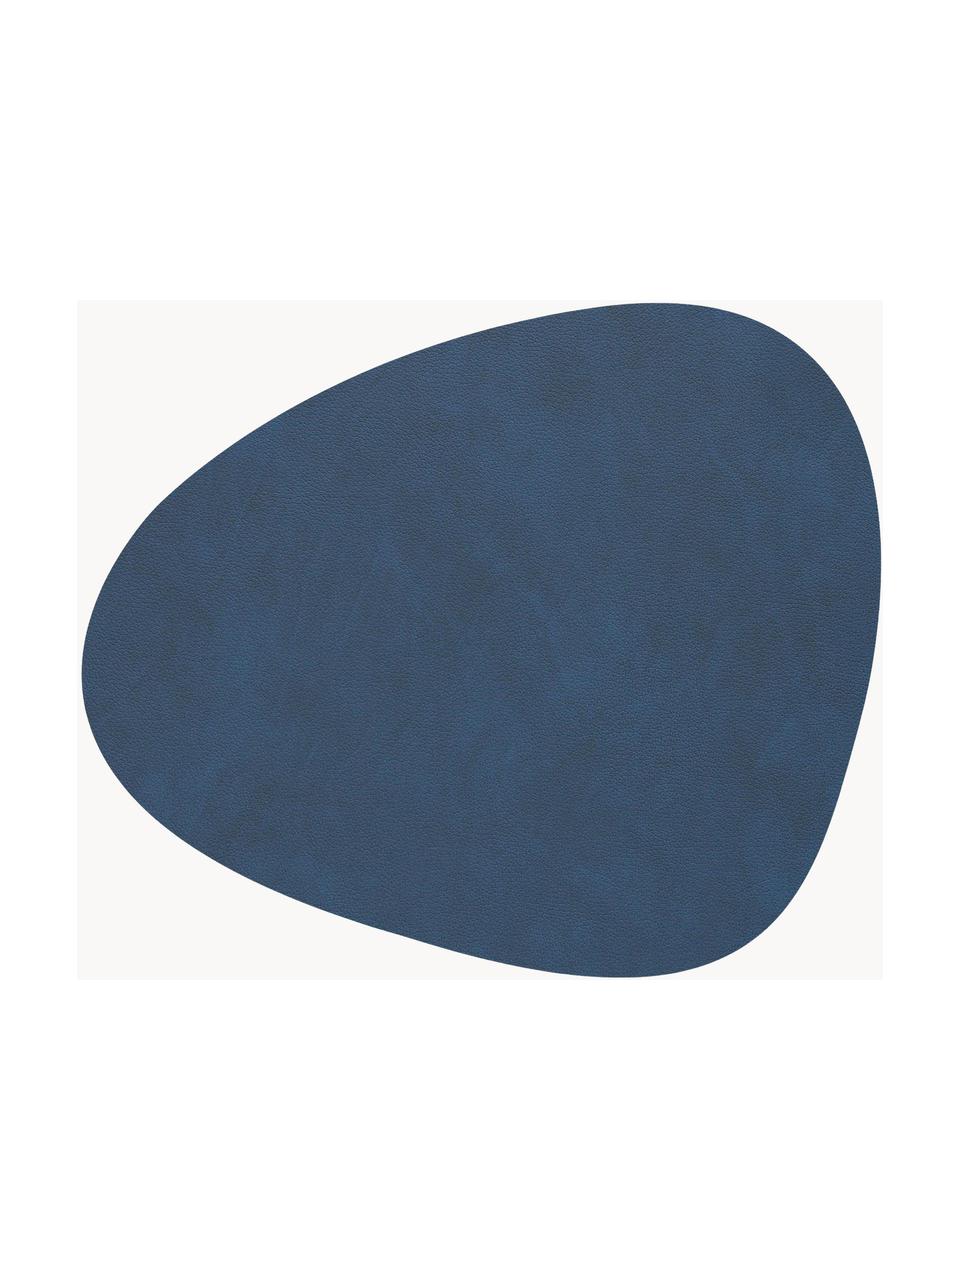 Asymmetrische leren onderzetters Curve, 4 stuks, Leer, rubber, Donkerblauw, B 11 x L 13 cm